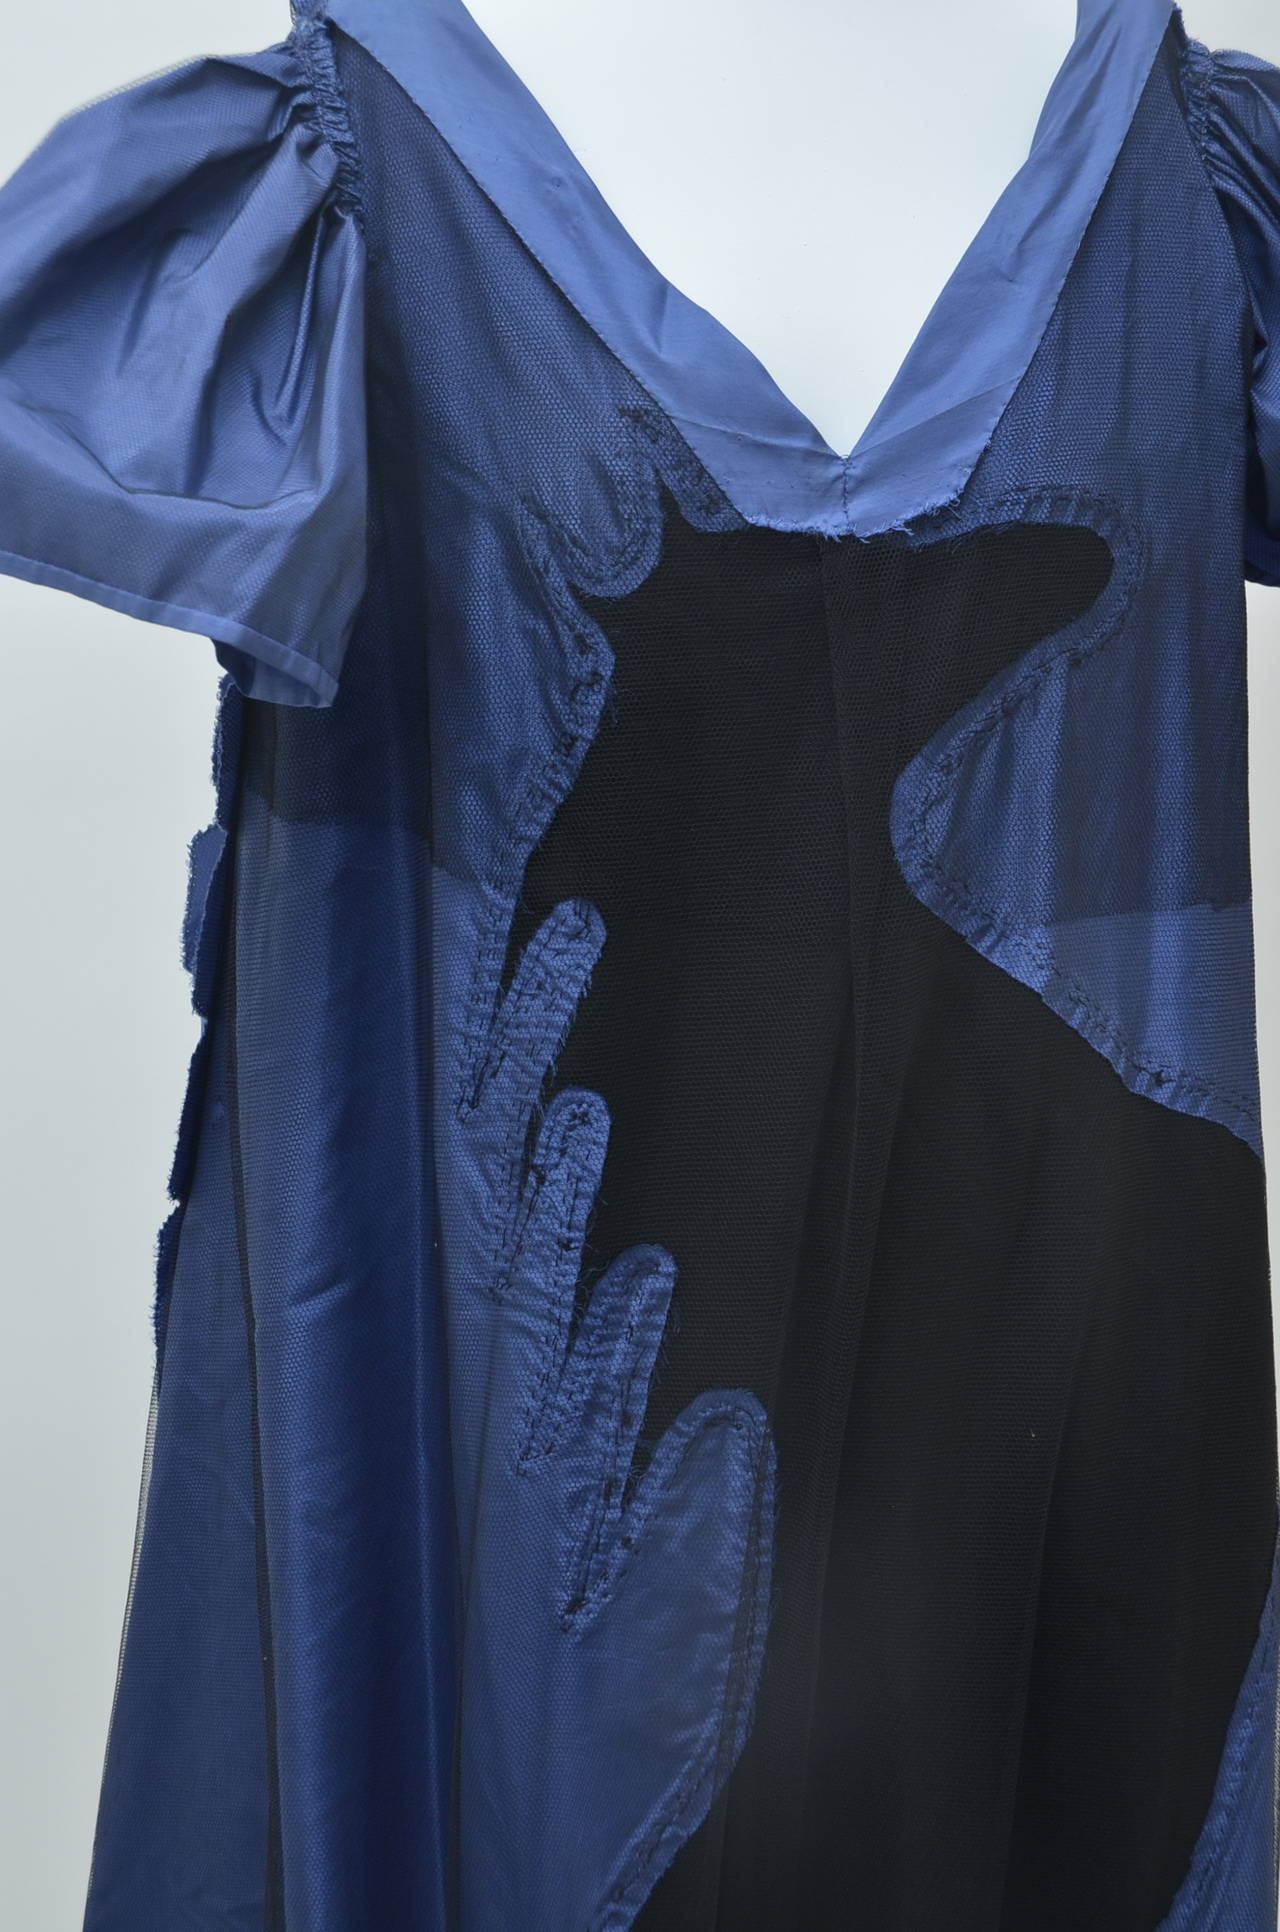  Robe haute couture Carven non étiquetée signée et attribuée à Tilda Thamar Pour femmes 